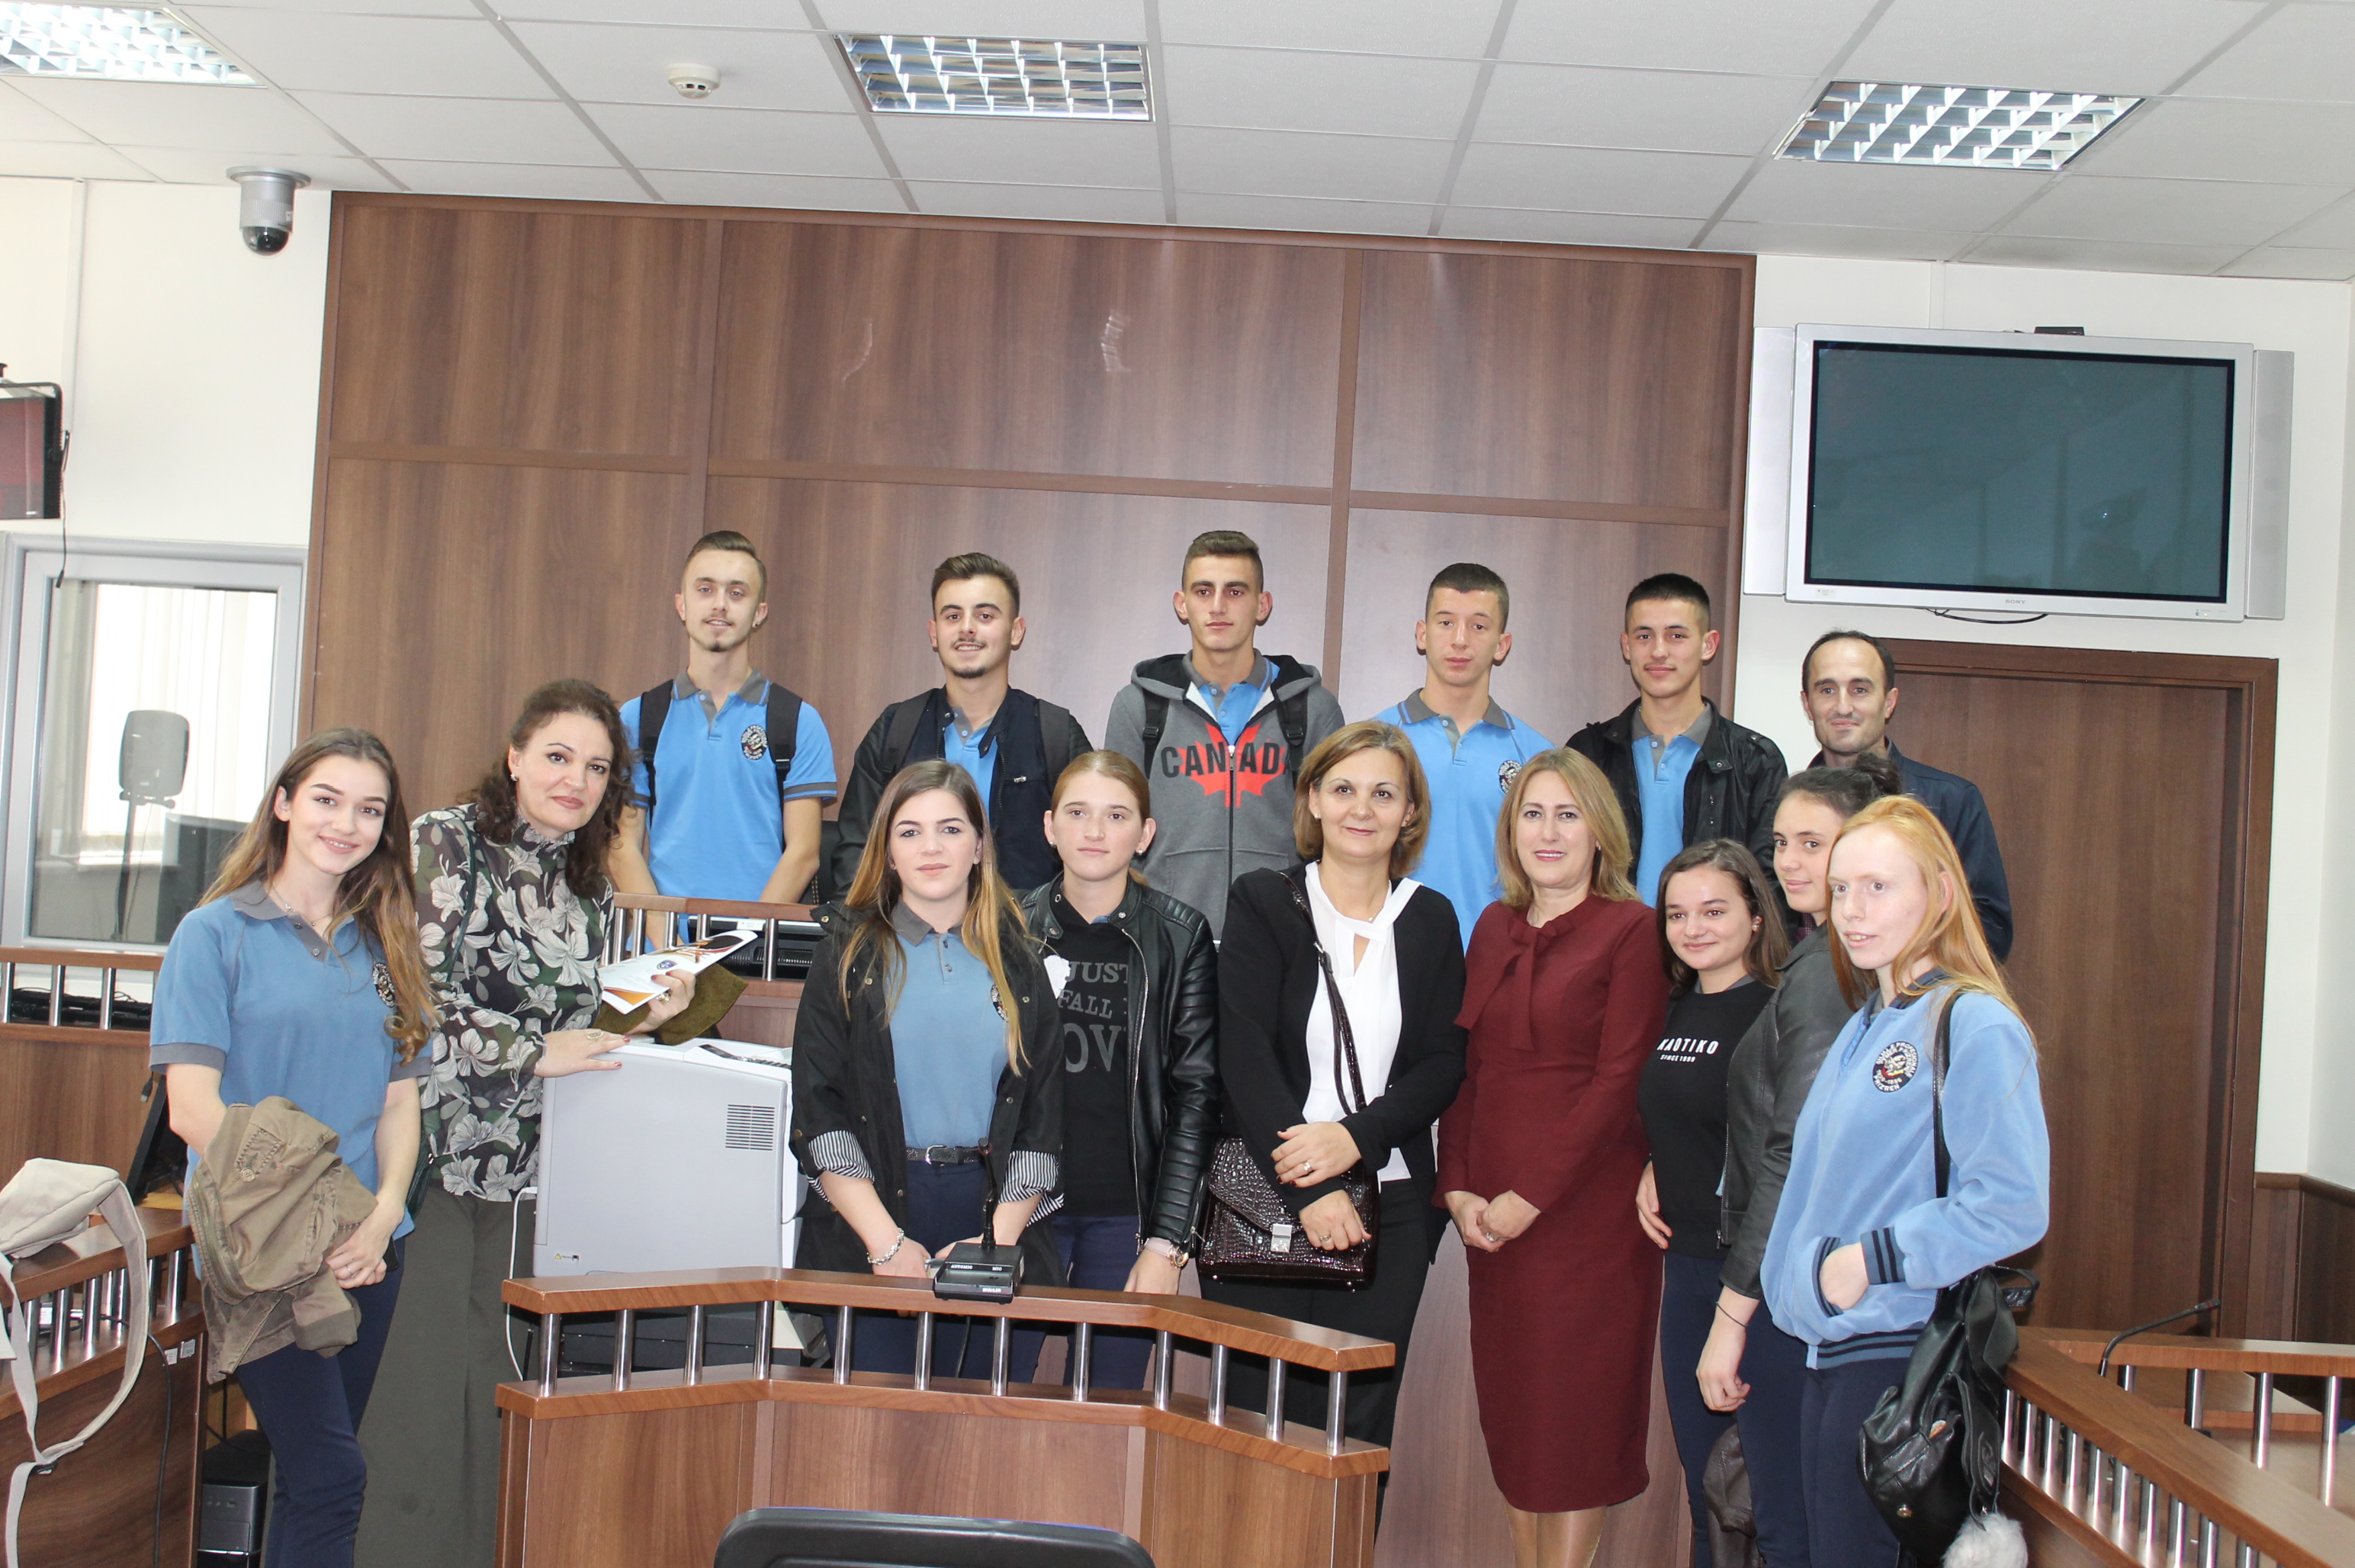 Gjykata Themelore e Prizrenit priti për vizitë nxënësit së bashku me përfaqësuesit e Bibliotekës Ndërkomunale të Prizrenit